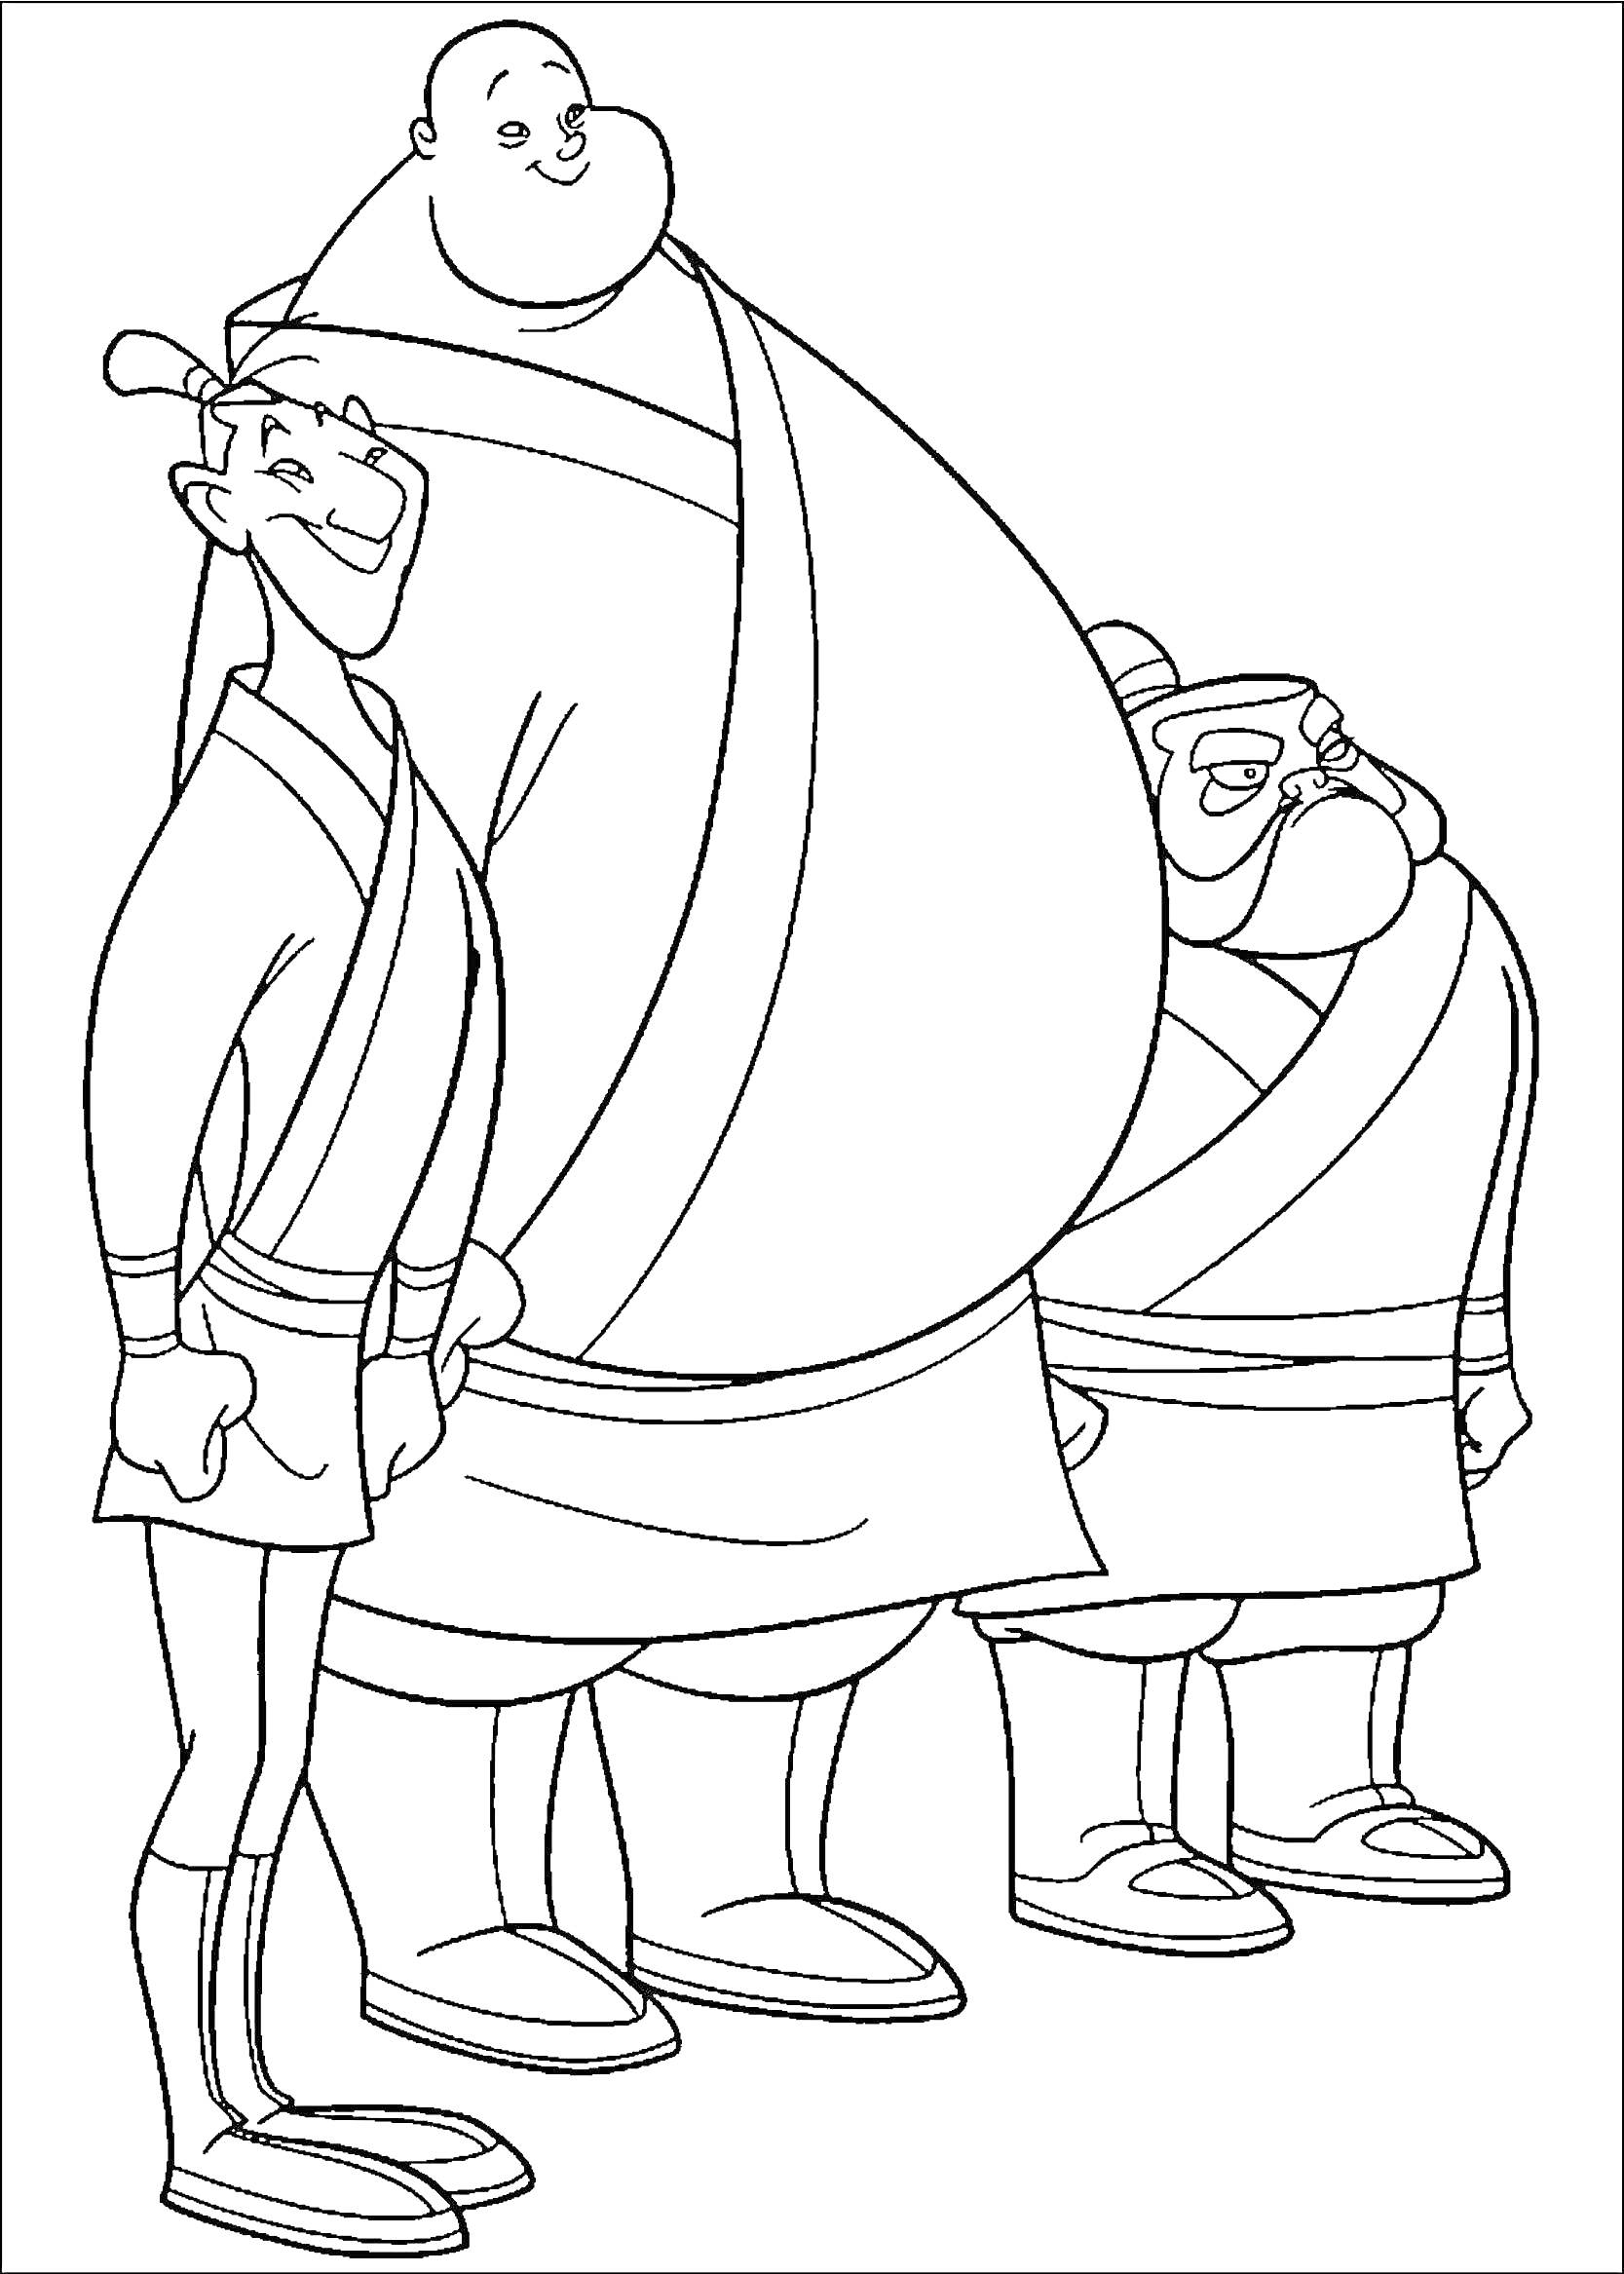 Раскраска Трое воинов-союзников из Мулан в традиционных одеждах